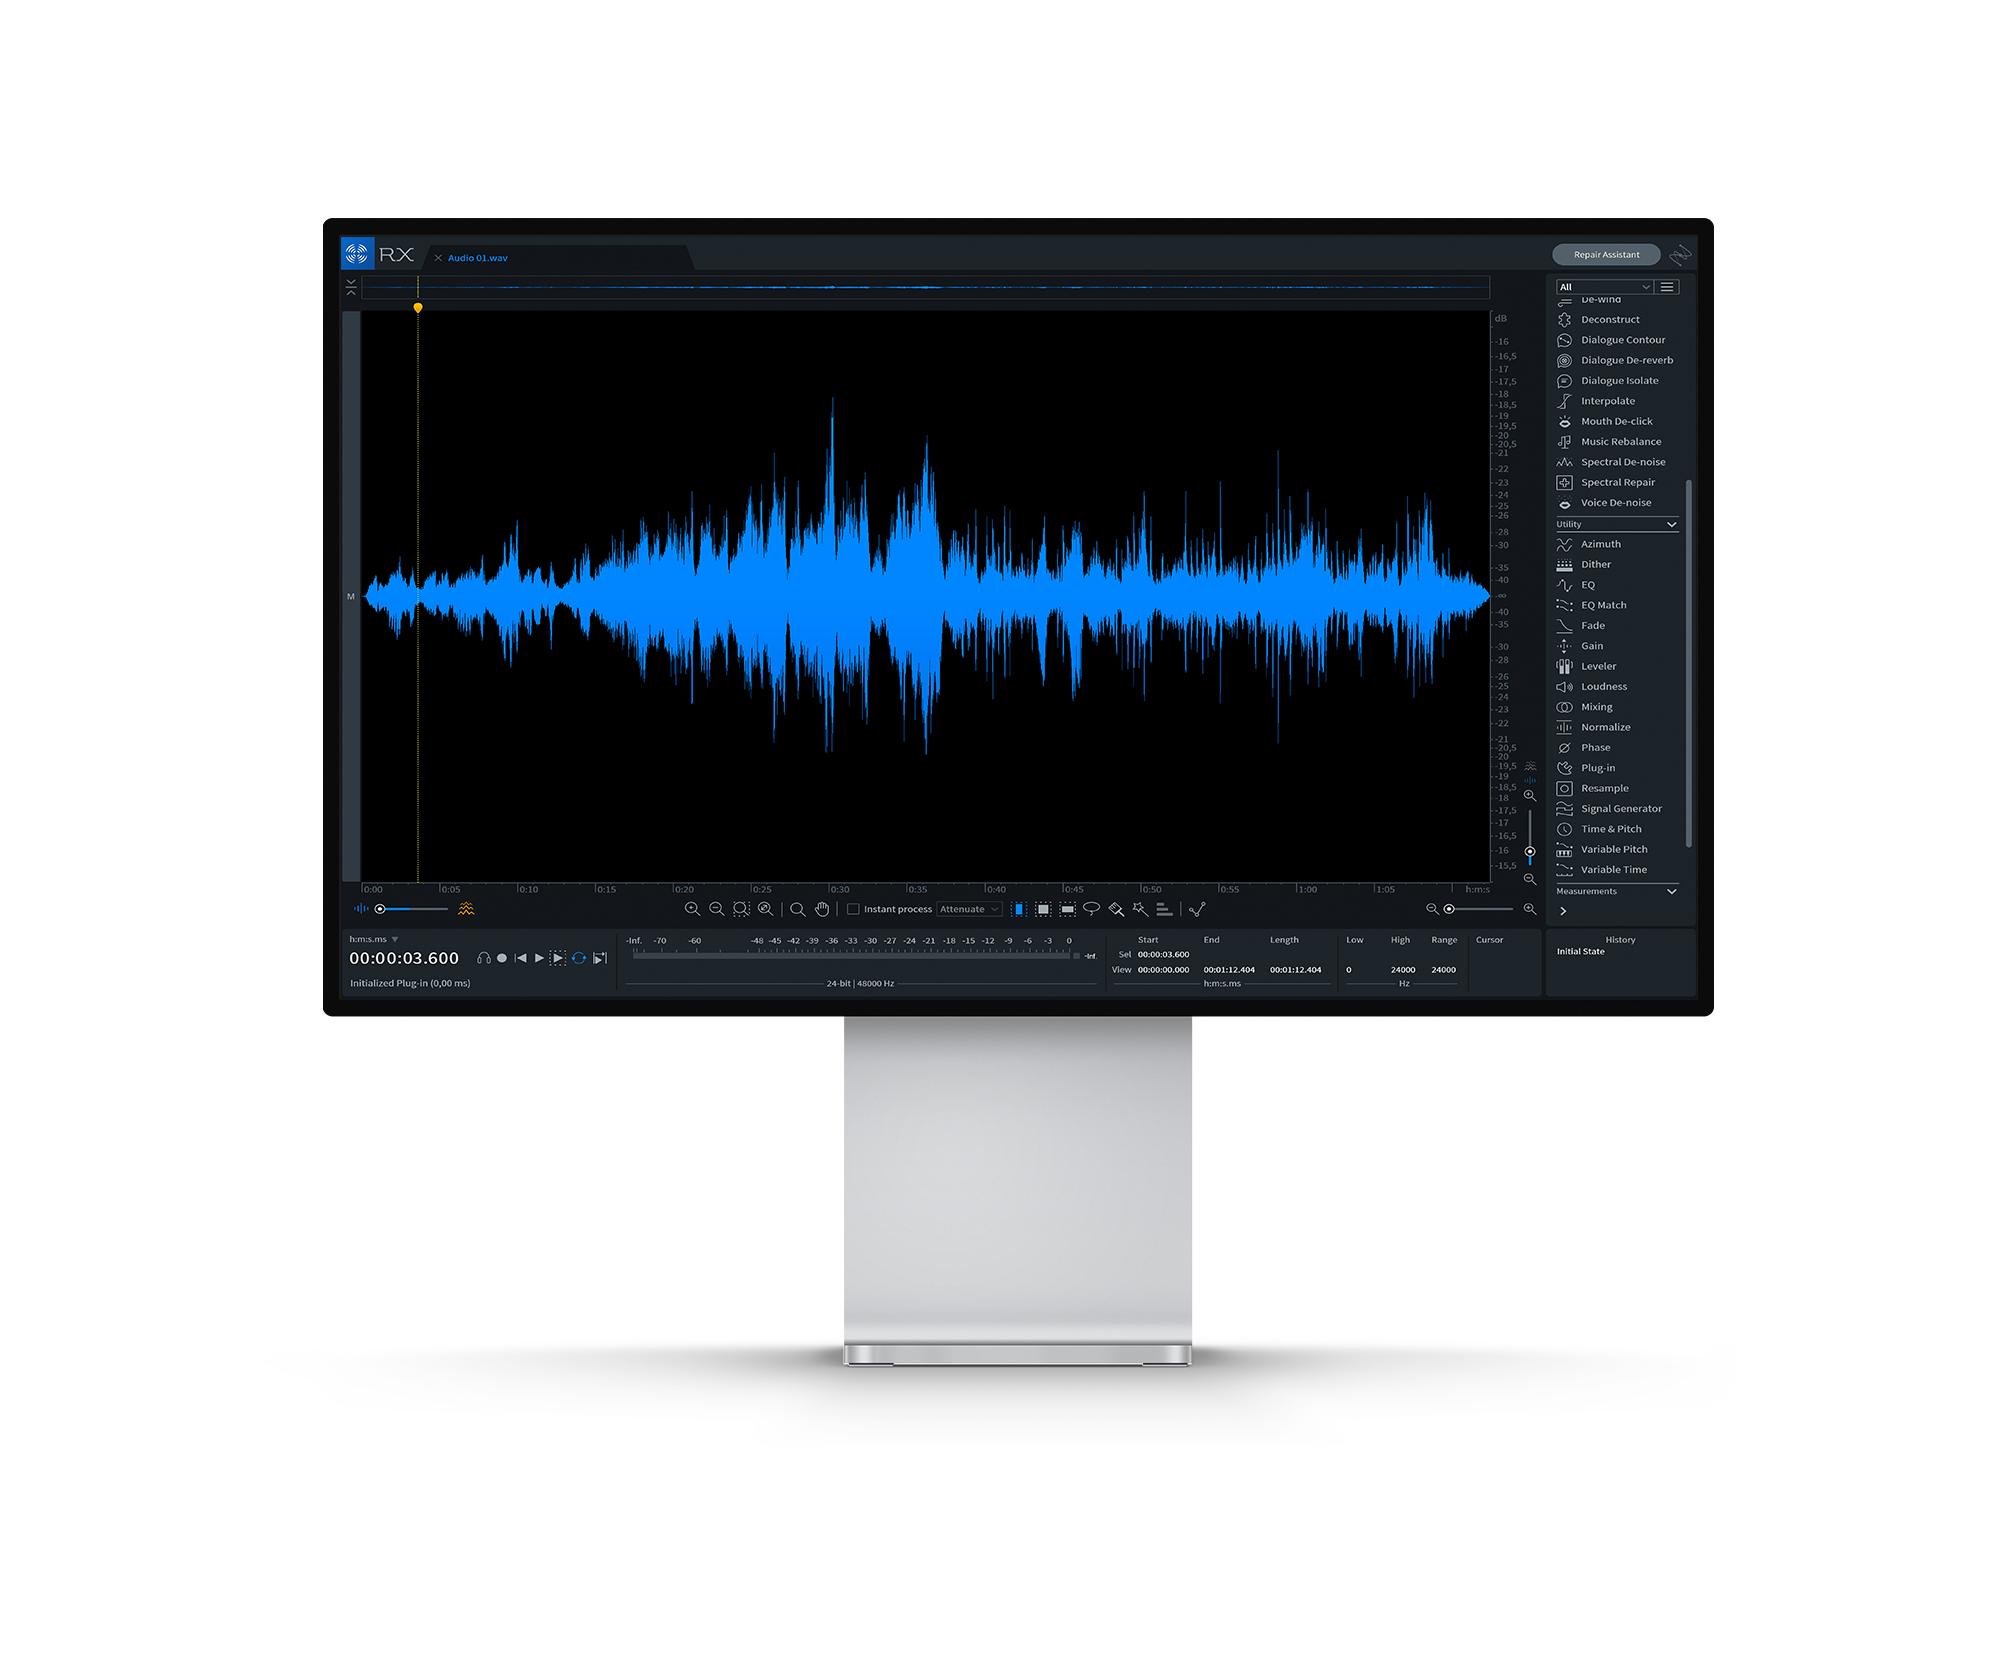 Monitor Pro Display XDR Mockup CROP3 | Todas as nossas vozes são cuidadosamente editadas por nossos engenheiros suiços e alemães, para garantir que todas as gravações estão livres de qualquer erro de leitura e estão soando perfeitamente. Nós seremos responsáveis pela remoção de ruído e saliva, controle dinamico e equalização em todas as entregas. Muitos clientes contam com a gente no processo de pós-produção, design de som, composição de trilha e mixagem. Nosso time é altamente experiente em mixagems de longa metragem (5.1 surround), gravações de orquestra e muitos outros serviços de áudio. Nossas ferramentas padrões são Nuendo, Protools e Izotope RX. Conheça o estúdio.Nós oferecemos uma solução completa (mixagem e pós-produção) para as suas demandas de áudio. Desde 2008, nós temos tido a oportunidade de trabalhar com clientes e agências de propaganda mais influentes do mercado. Ogilvy, Leo Burnett, LEW LARA | TBWA, JWT (Wunderman Thompson), Interbrand, AlmapBBDO, VML, Y&R (Young & Rubicam), são alguns de nossos clientes. 